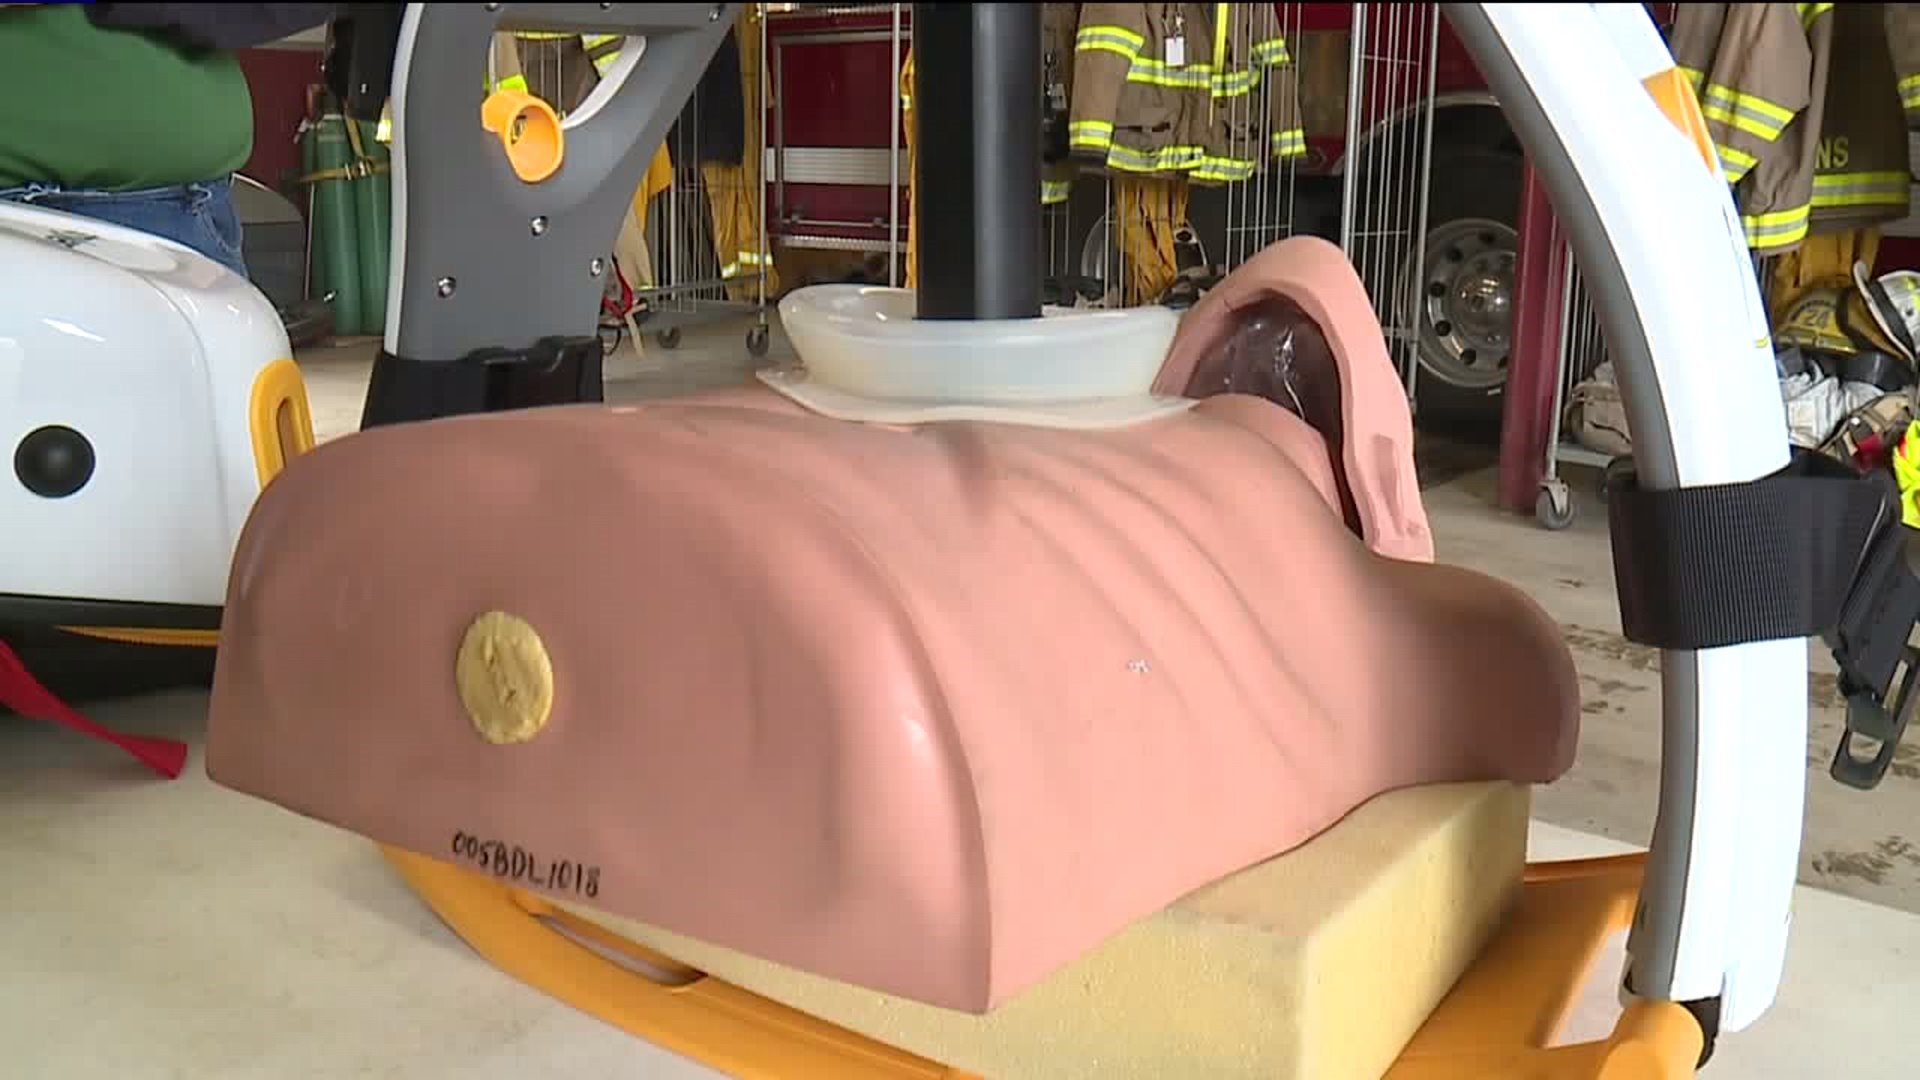 EMT's Unveil Mechanical CPR Machine